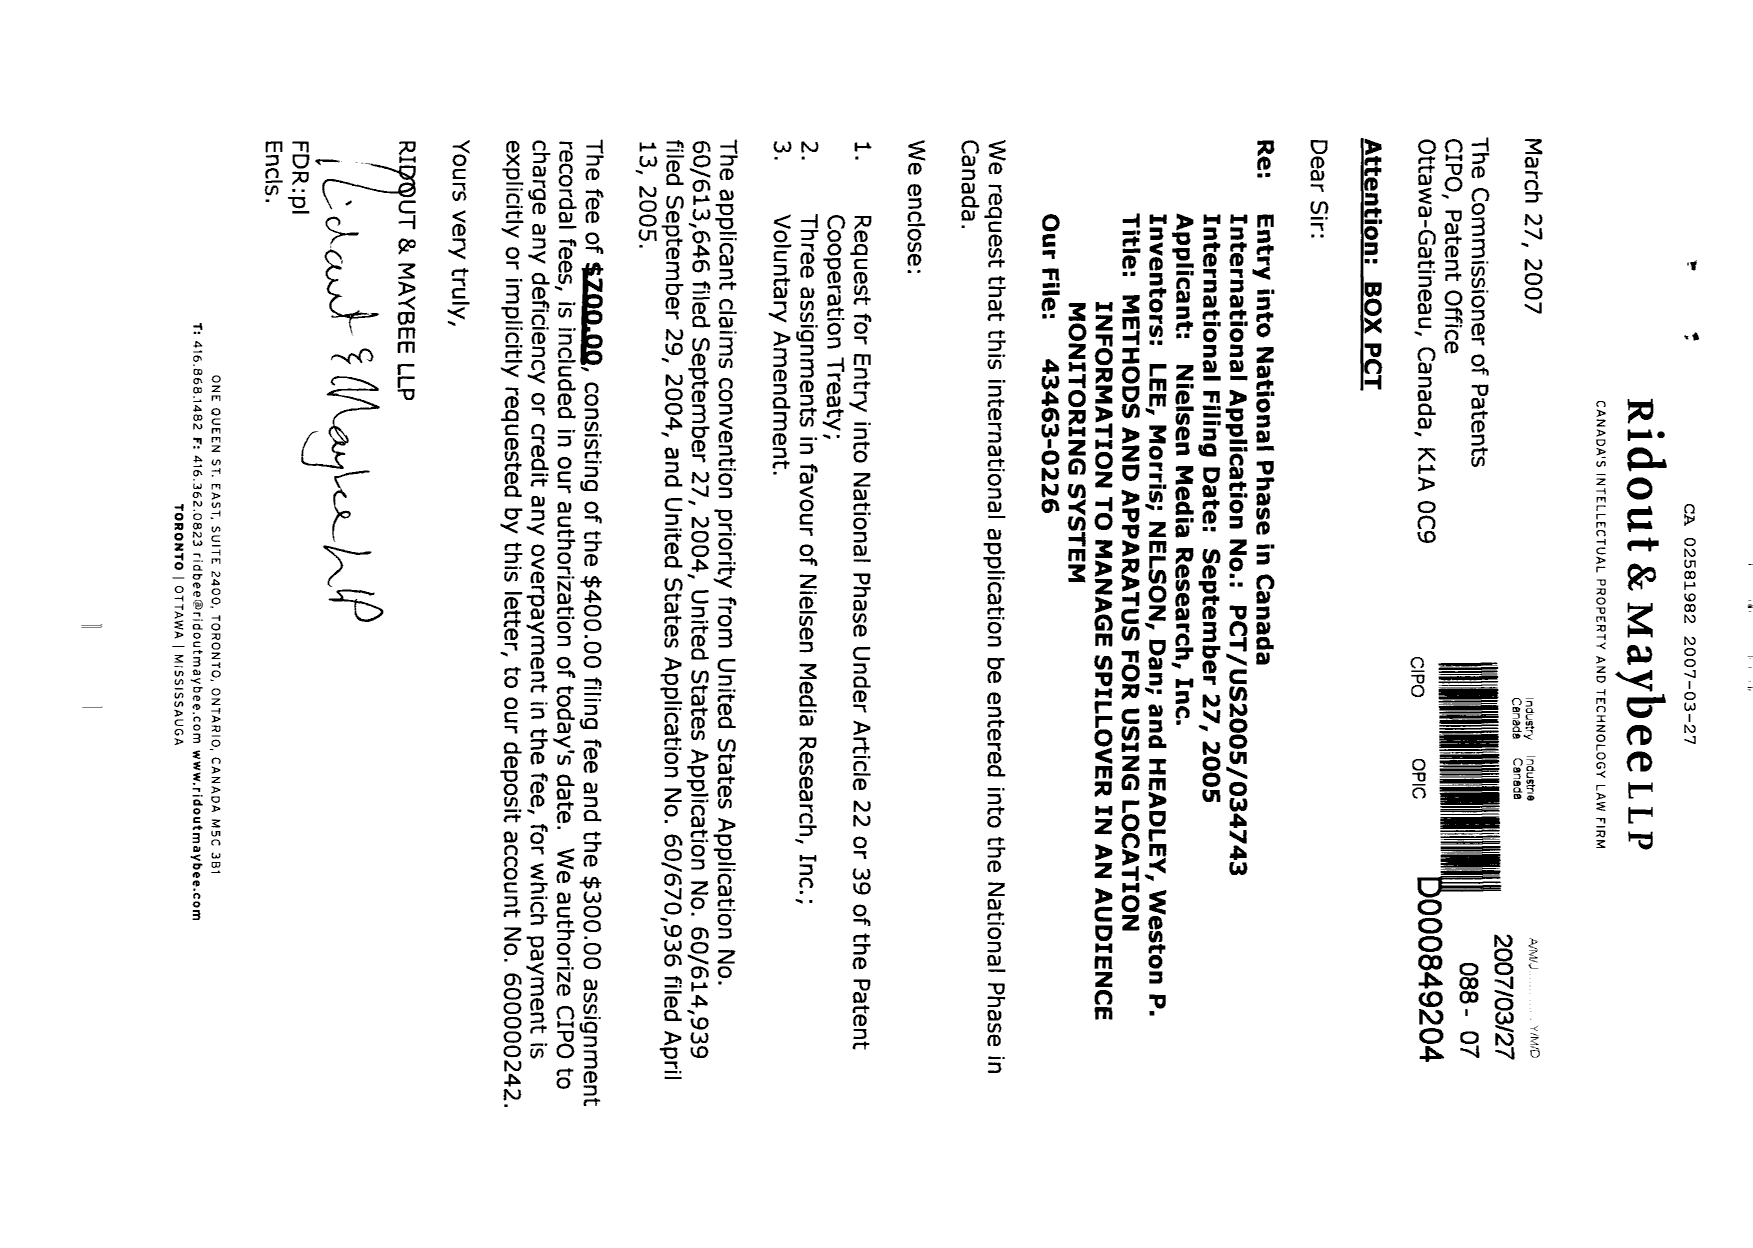 Document de brevet canadien 2581982. Cession 20070327. Image 1 de 12